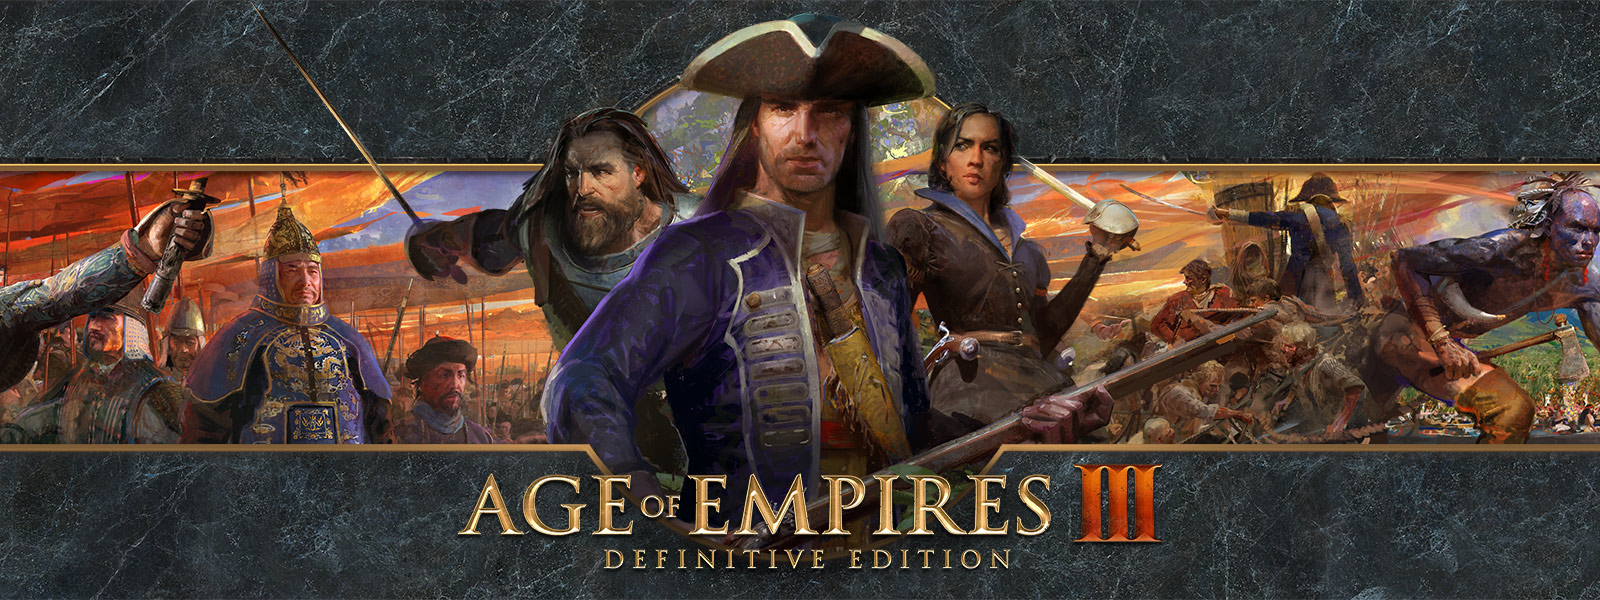 Logotipo de Age of Empires III: Definitive Edition sobre fondo con los líderes de guerra y sus ejércitos